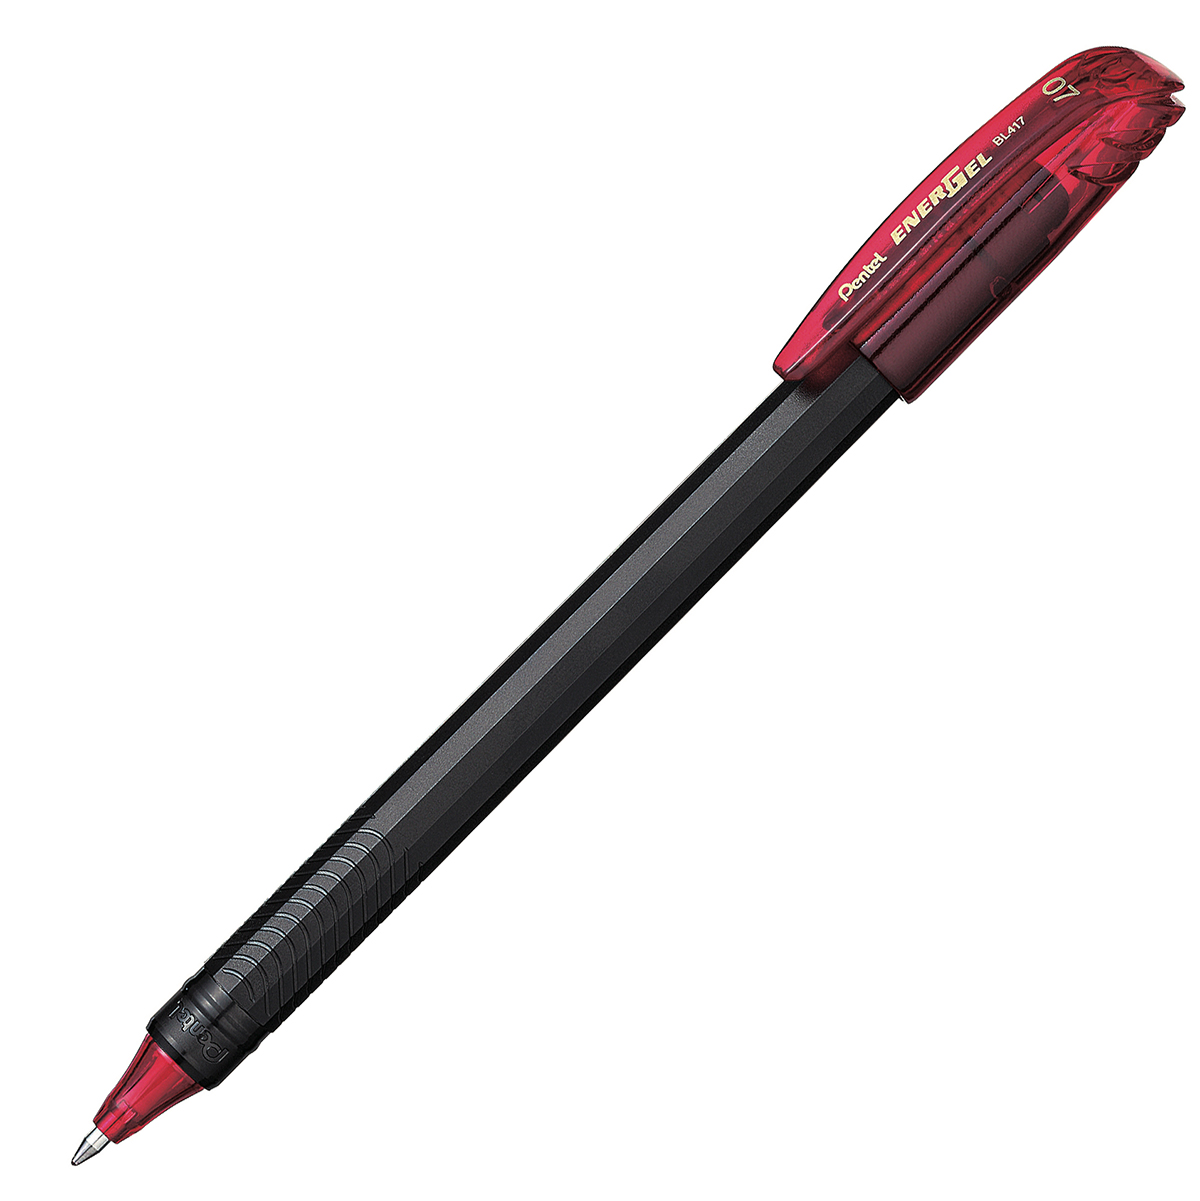 Bolígrafo Pentel energel stick punto 0.7 Bolígrafo Pentel energel tinta gel color rojo, 0.7 mm secado rápido, peso ligero con 12 lados, hecho de 62% material reciclado. la tapa indica el color de la tinta                                                                                             mm (mediano) tinta rojo, 1 pieza         - BL417-B